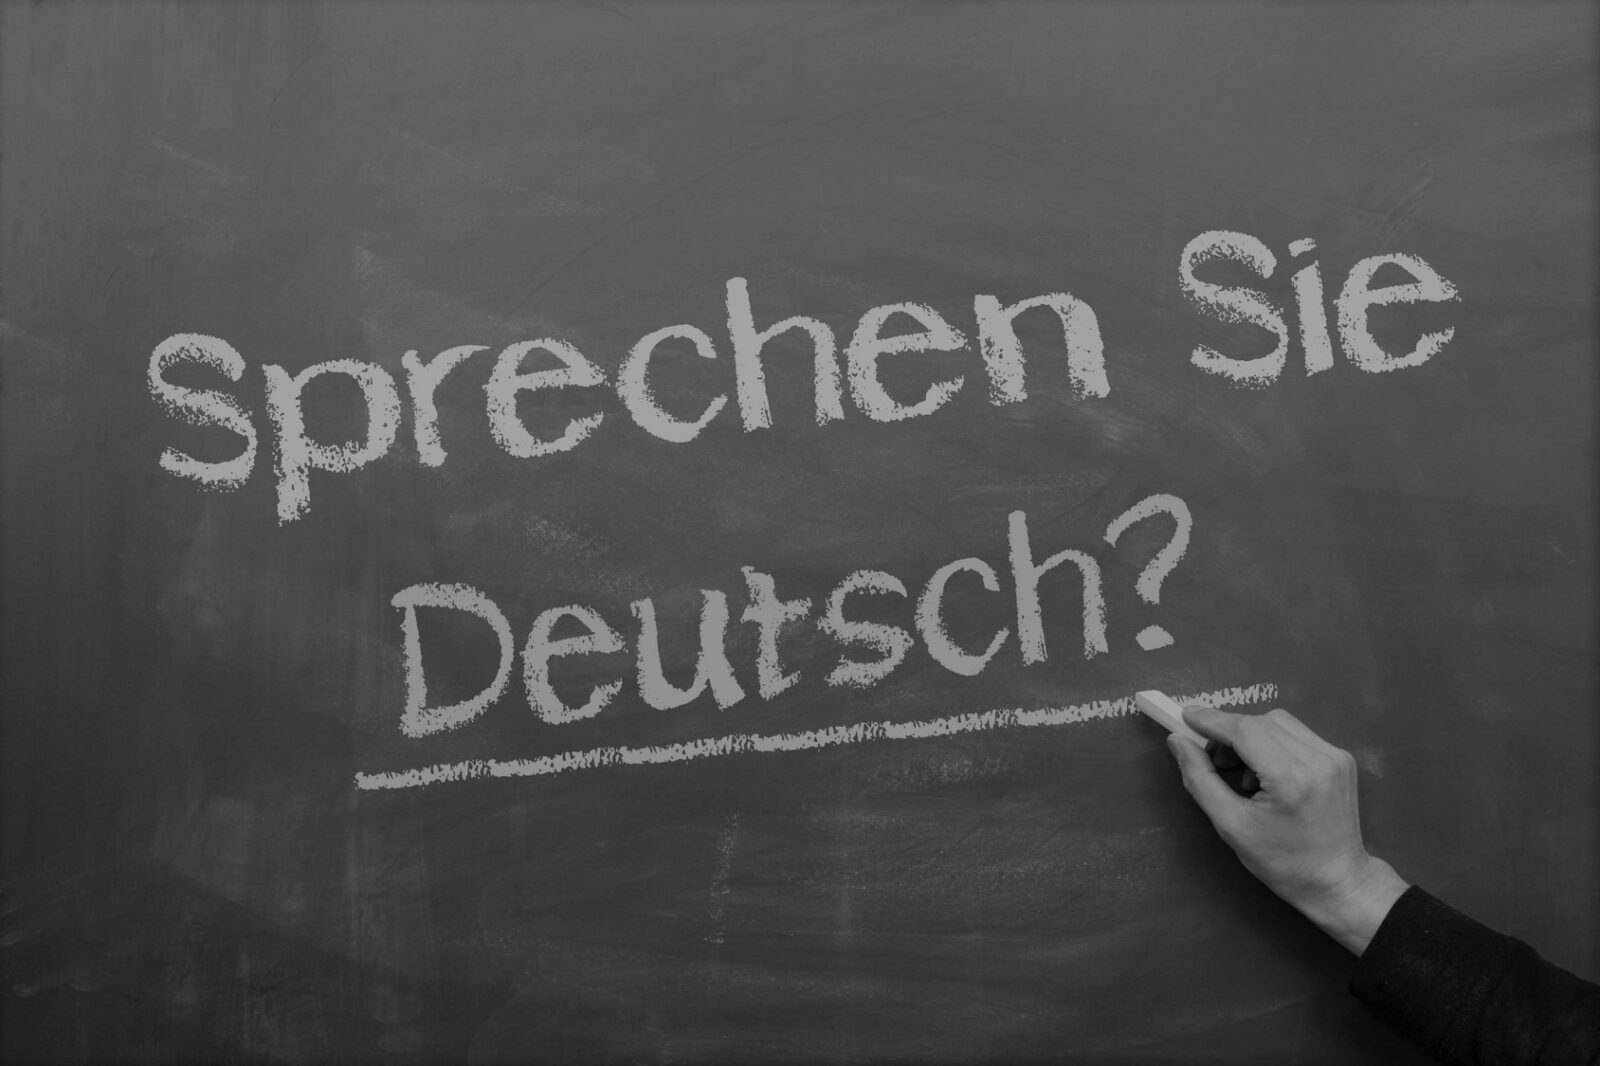 Німецька в школі та університеті: як застосувати знання мови українським учням?